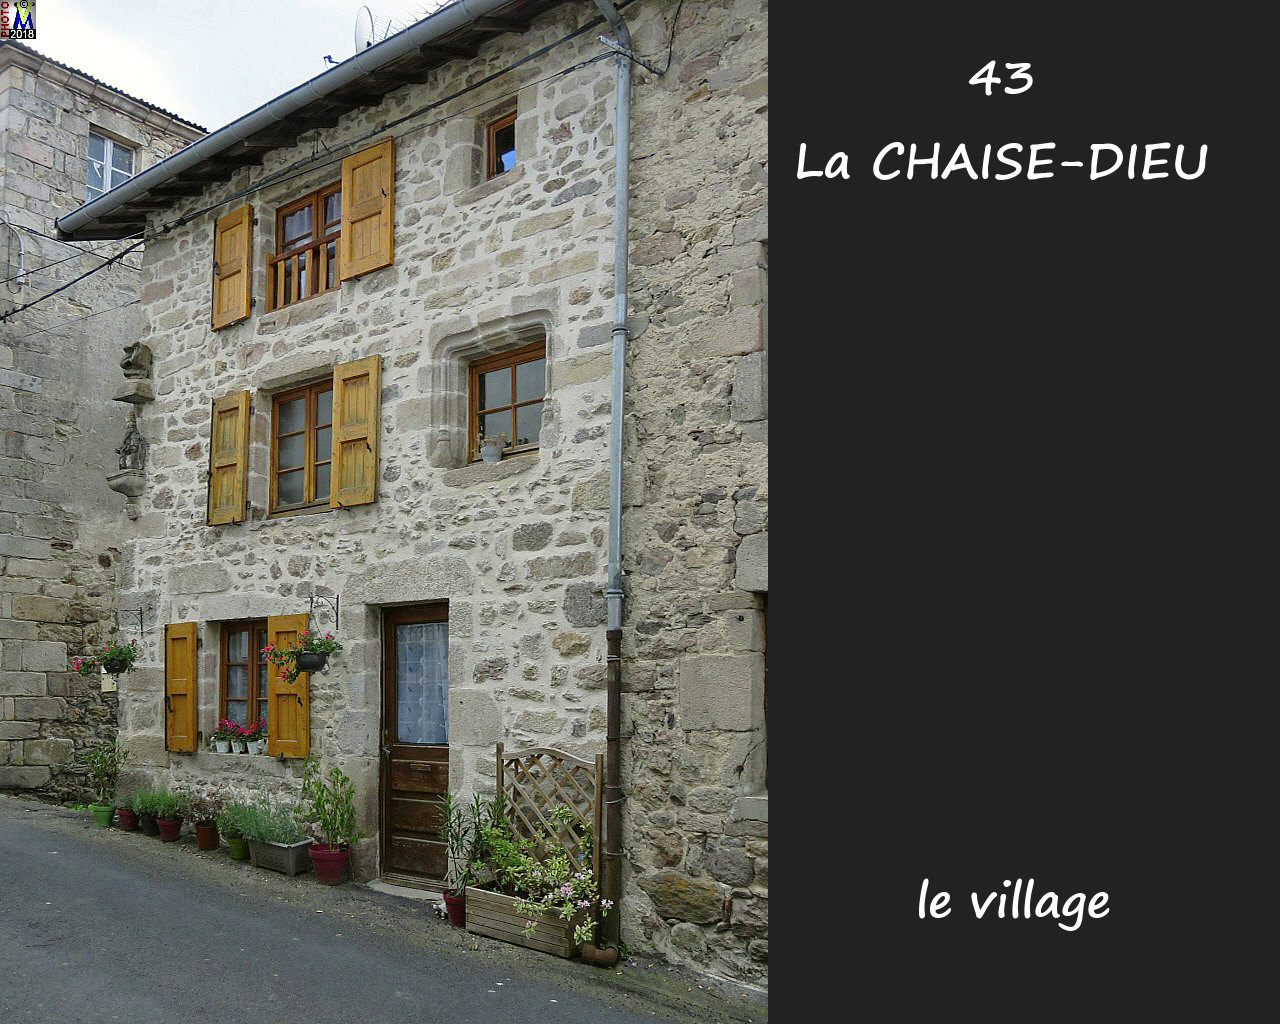 43CHAISE-DIEU_village_138.jpg